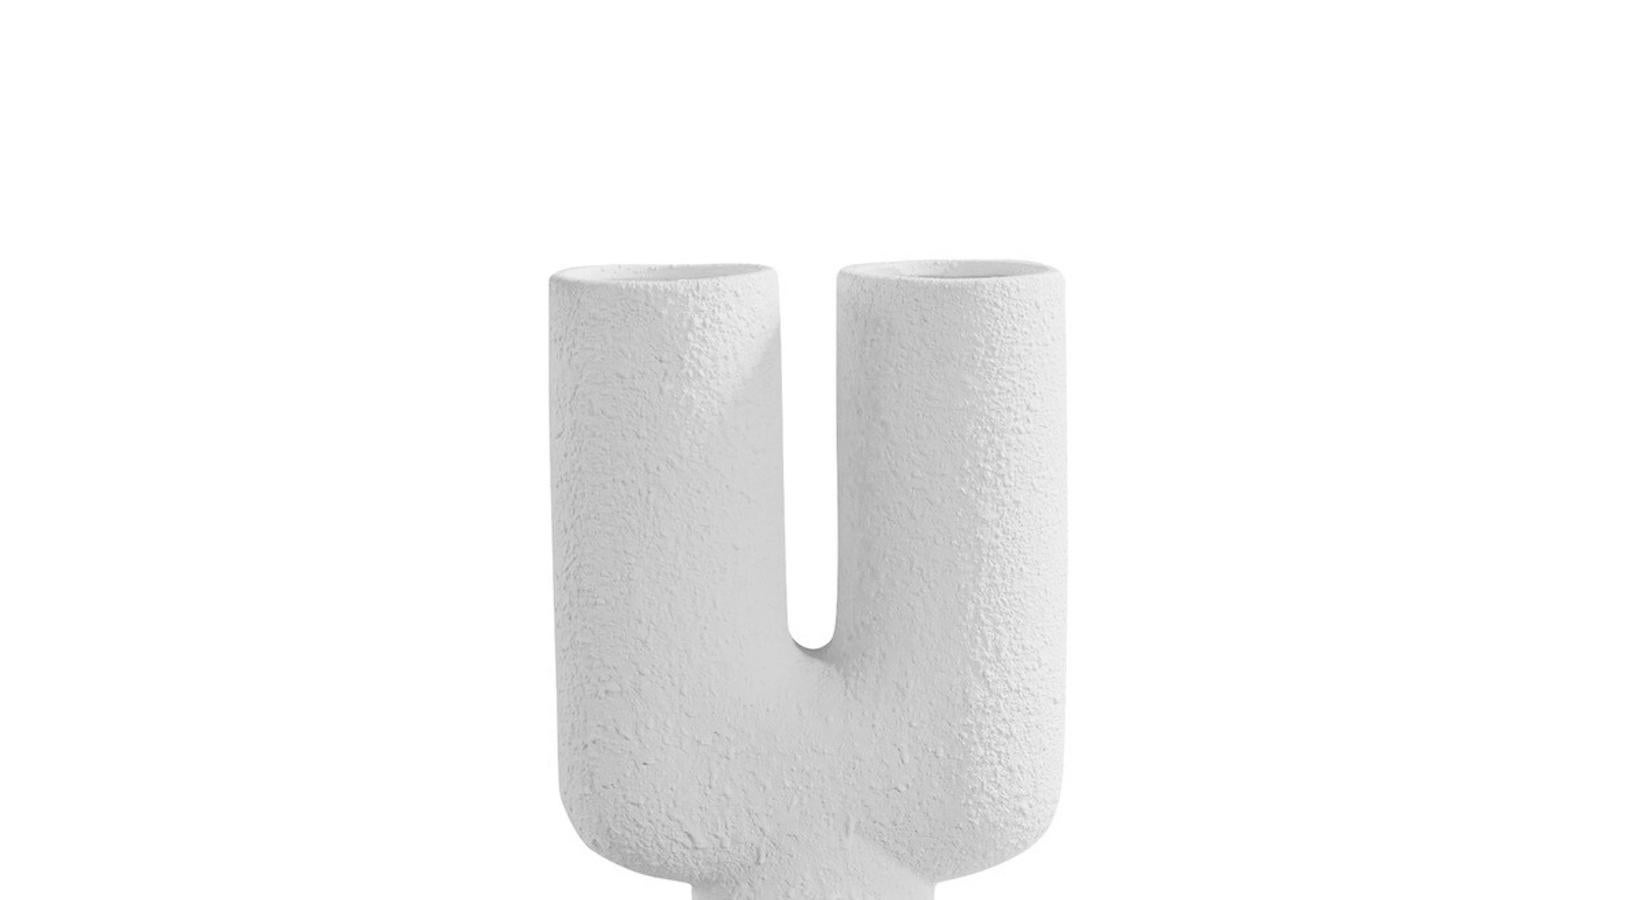 Hohe dänische Vase aus strukturierter weißer Keramik mit zwei runden Ausgüssen auf einem Sockel aus zwei runden Kugeln.
Sehr skulpturales Design.
Kleinere Version verfügbar S5602
Zwei davon sind erhältlich und werden einzeln verkauft.

